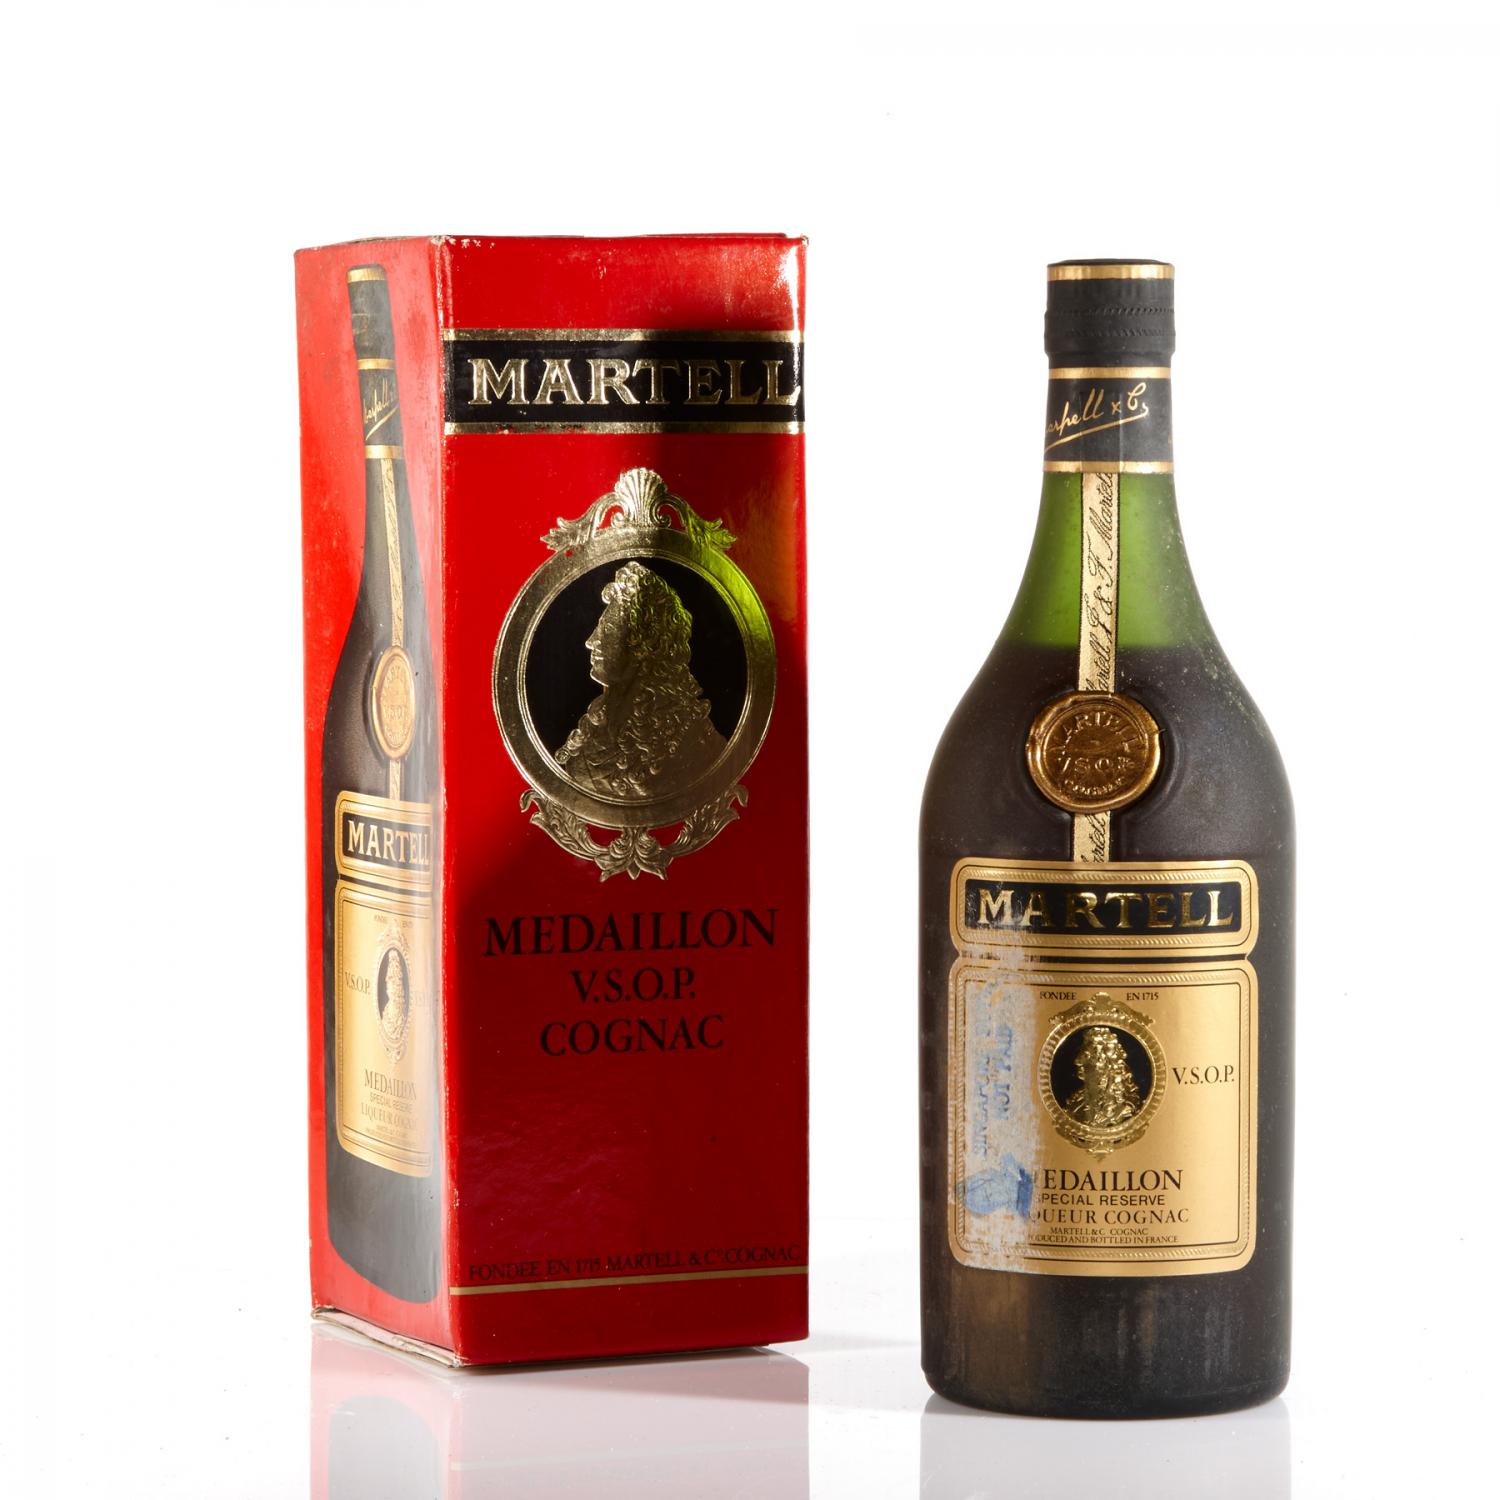 1) Martell Medaillon Special Reserve Liqueur Cognac VSOP Fondee En